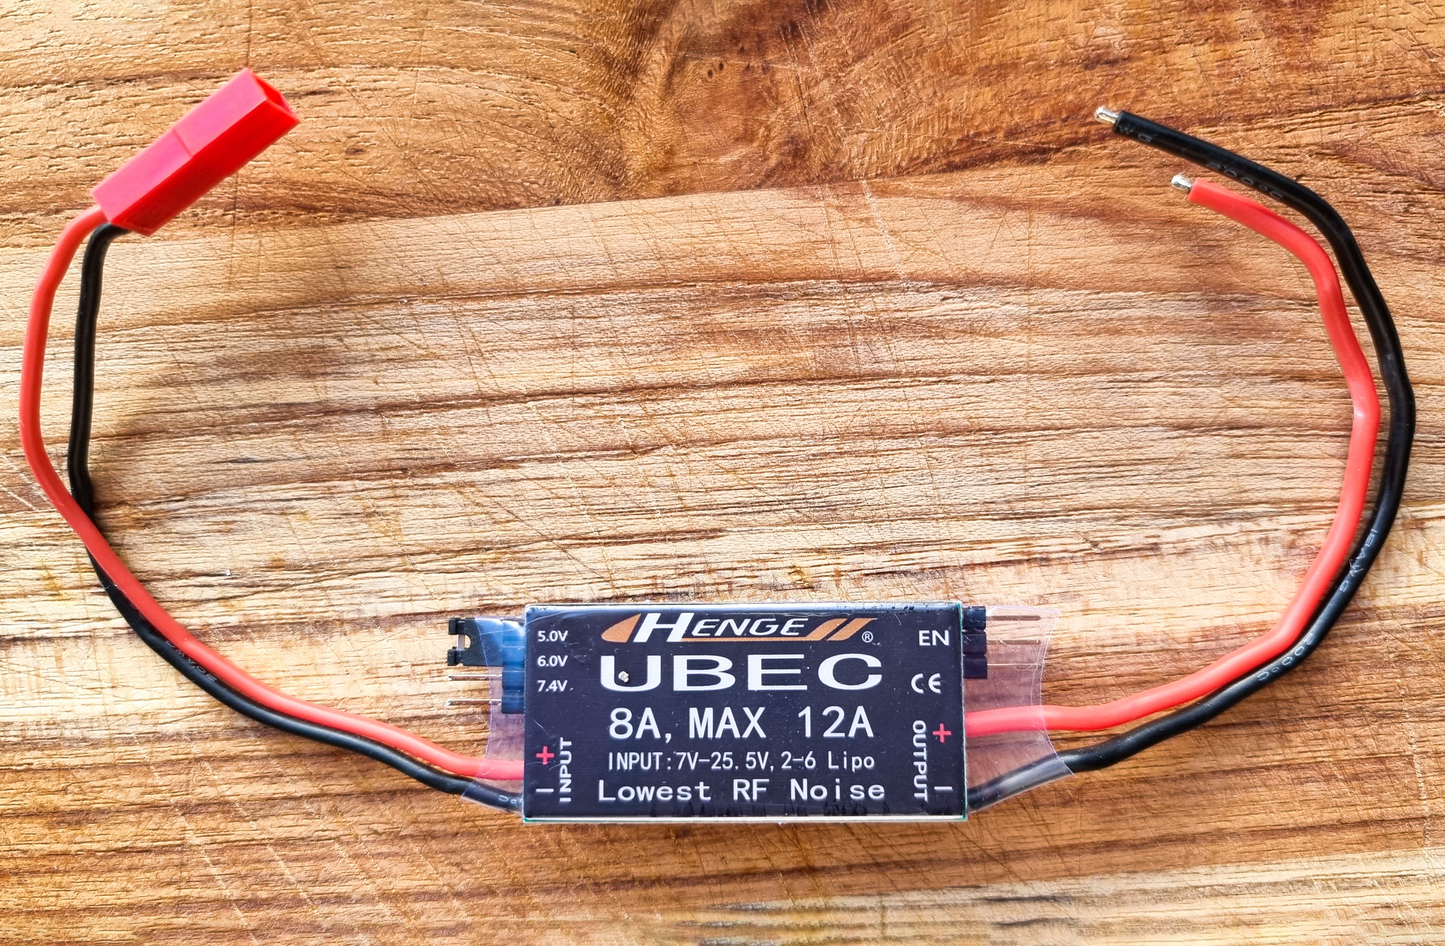 HENGE UBEC 5V (Universal Battery)